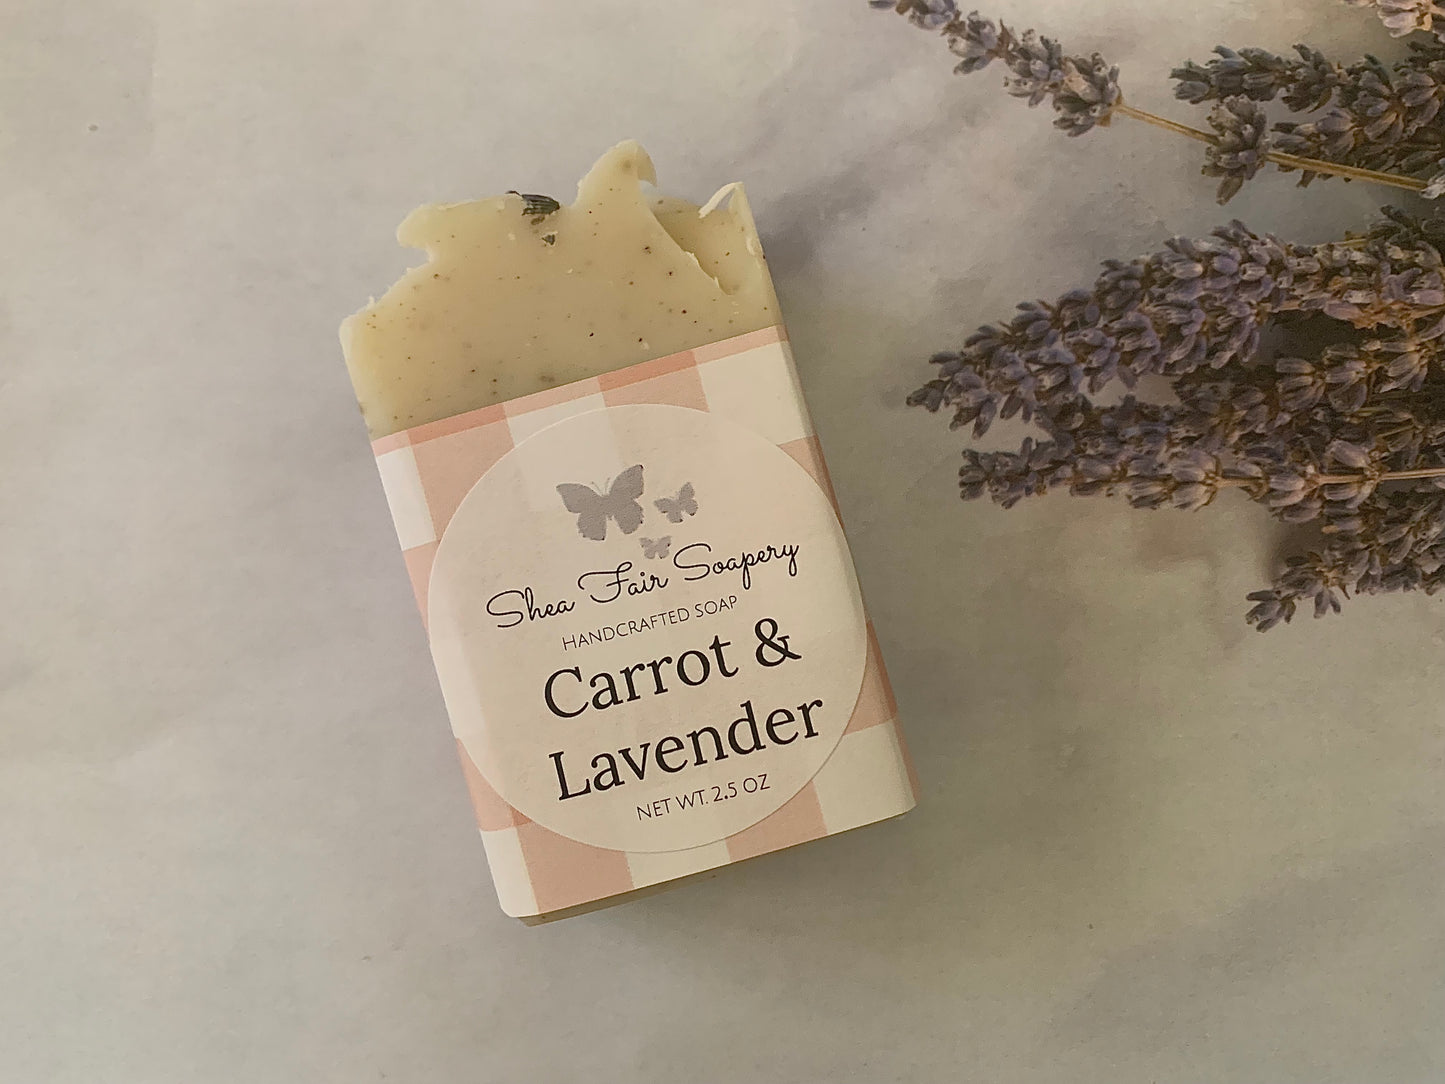 Carrot & Lavender Artisan Soaps